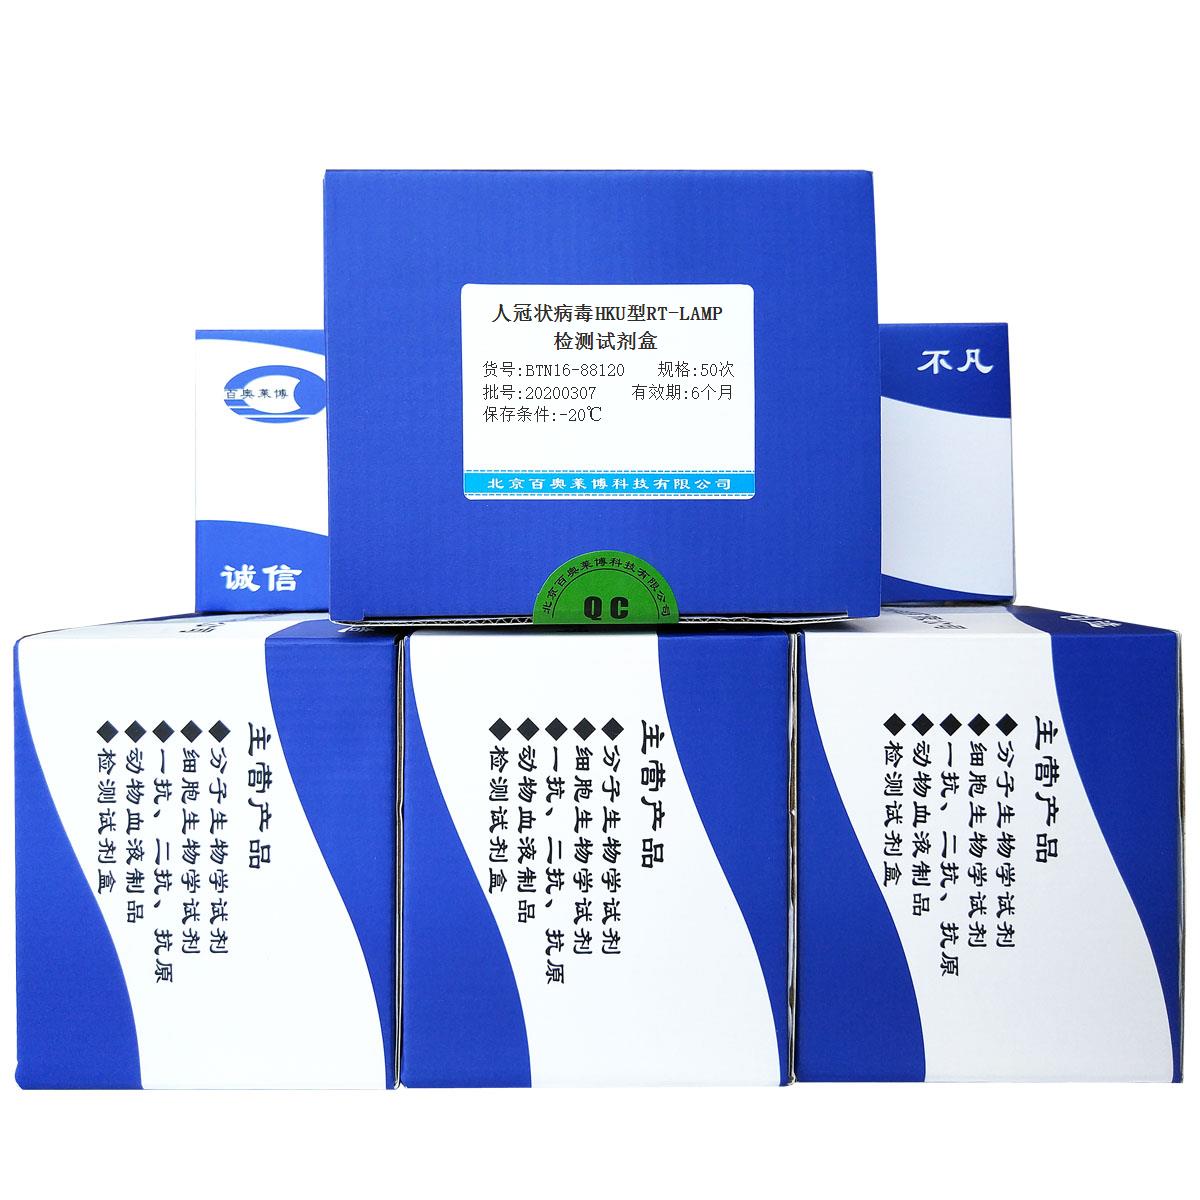 人冠状病毒HKU型RT-LAMP检测试剂盒